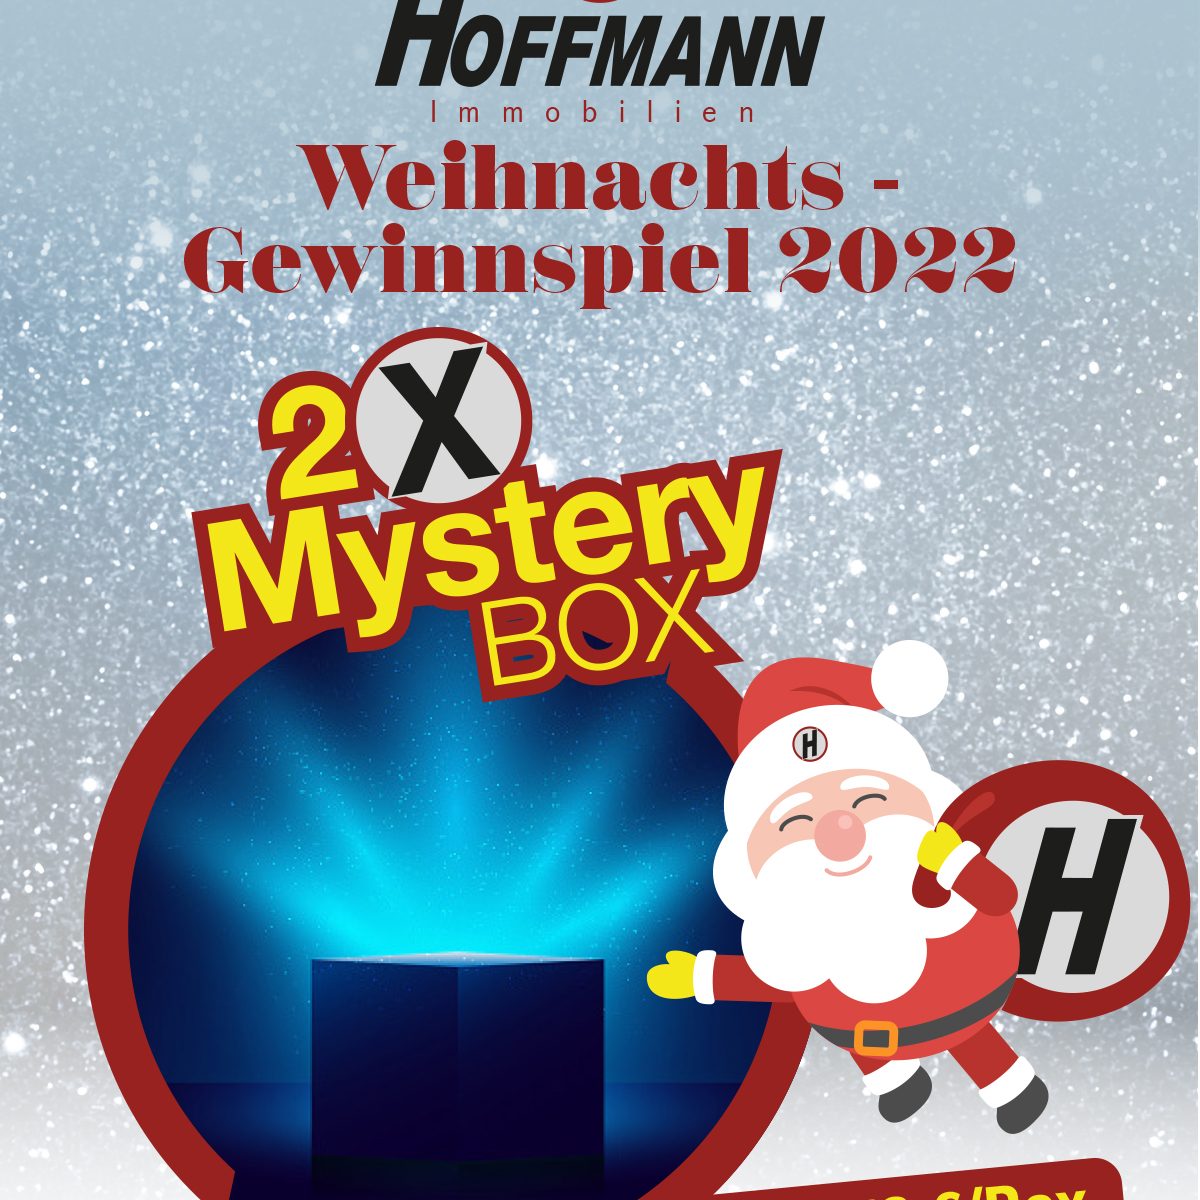 Weihnachts-Gewinnspiel der Hoffmann Immobilienverwaltung mit der Mystery Box